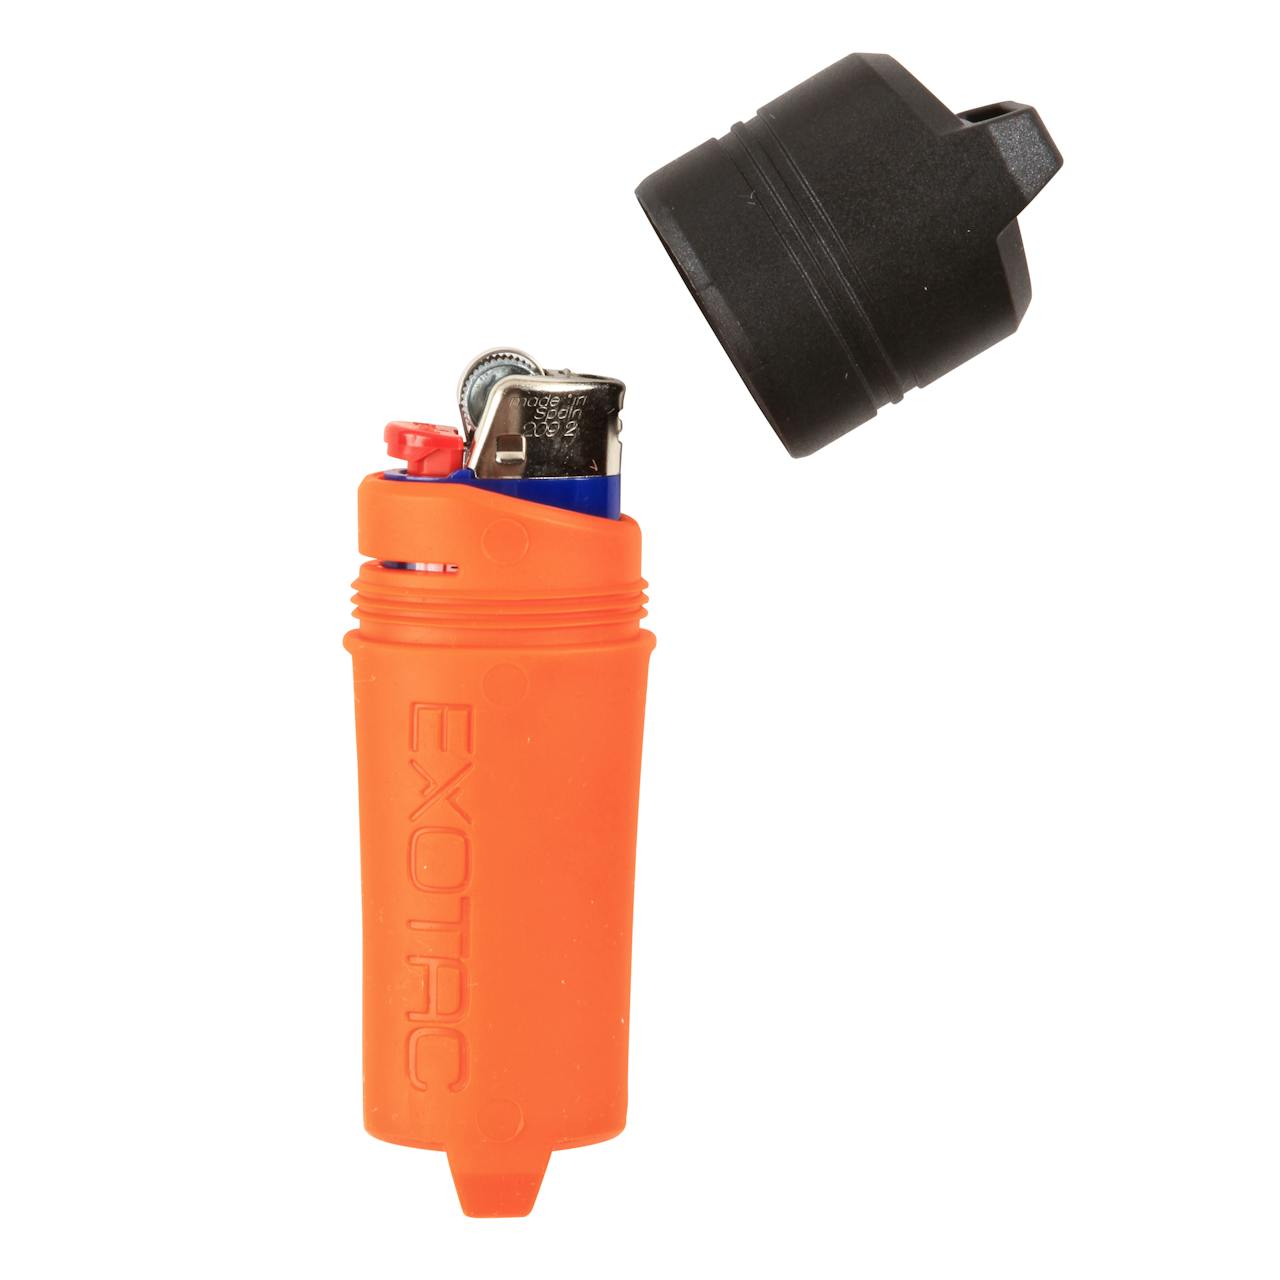 Exotac Waterproof Lighter Sleeve